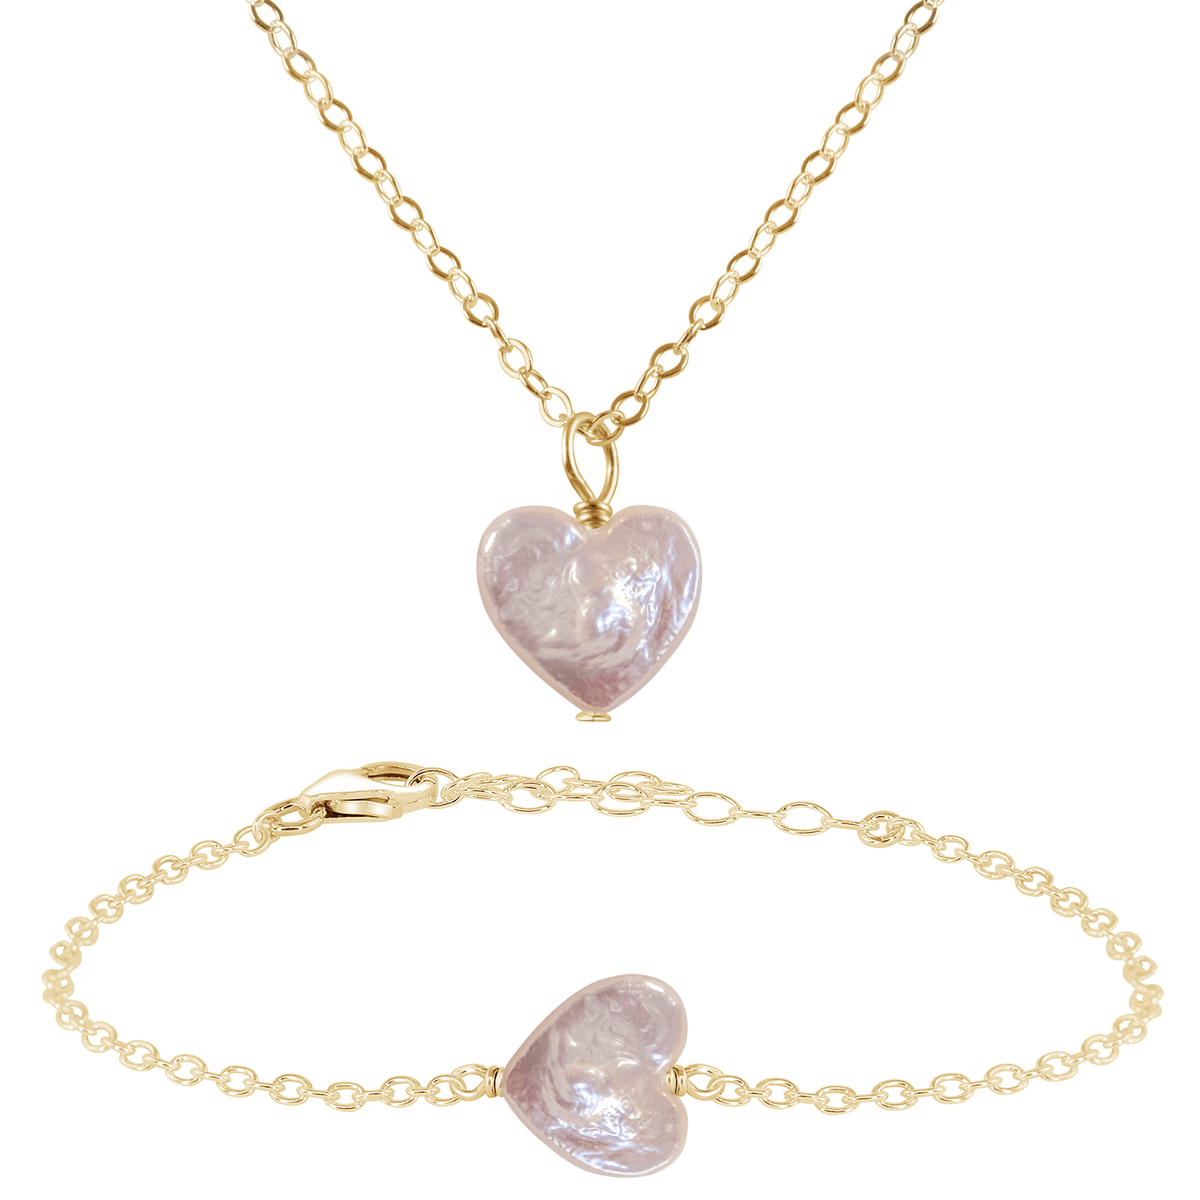 Freshwater Pearl Heart Jewellery Set - Freshwater Pearl Heart Jewellery Set - 14k Gold Fill / Cable / Necklace & Bracelet - Luna Tide Handmade Crystal Jewellery